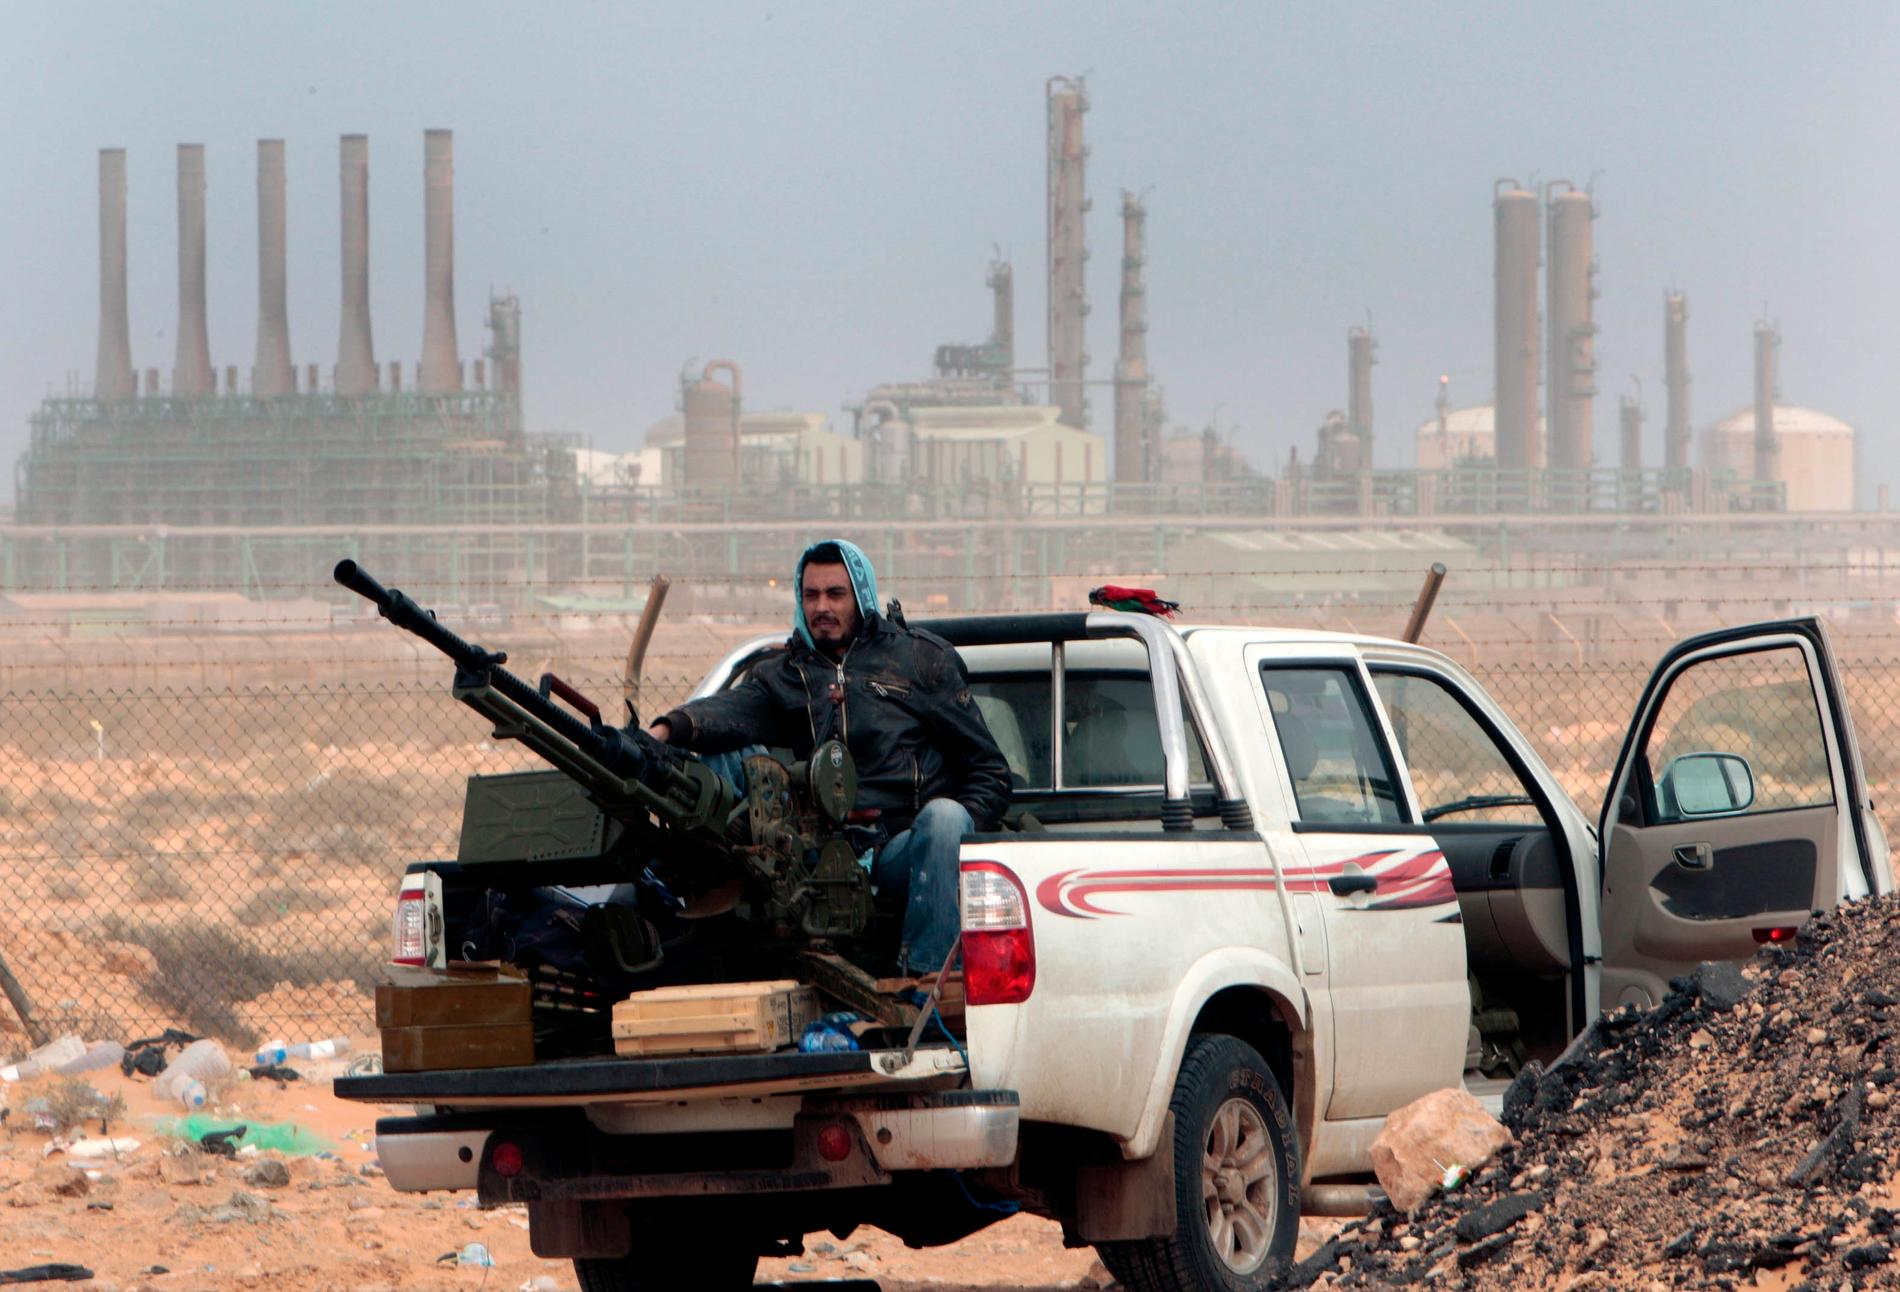 Bilden på en libysk rebell framför ett oljefält är från inbördeskriget 2011 när Gaddafi störtades från makten, och har ingen vidare koppling till texten. Arkivbild.